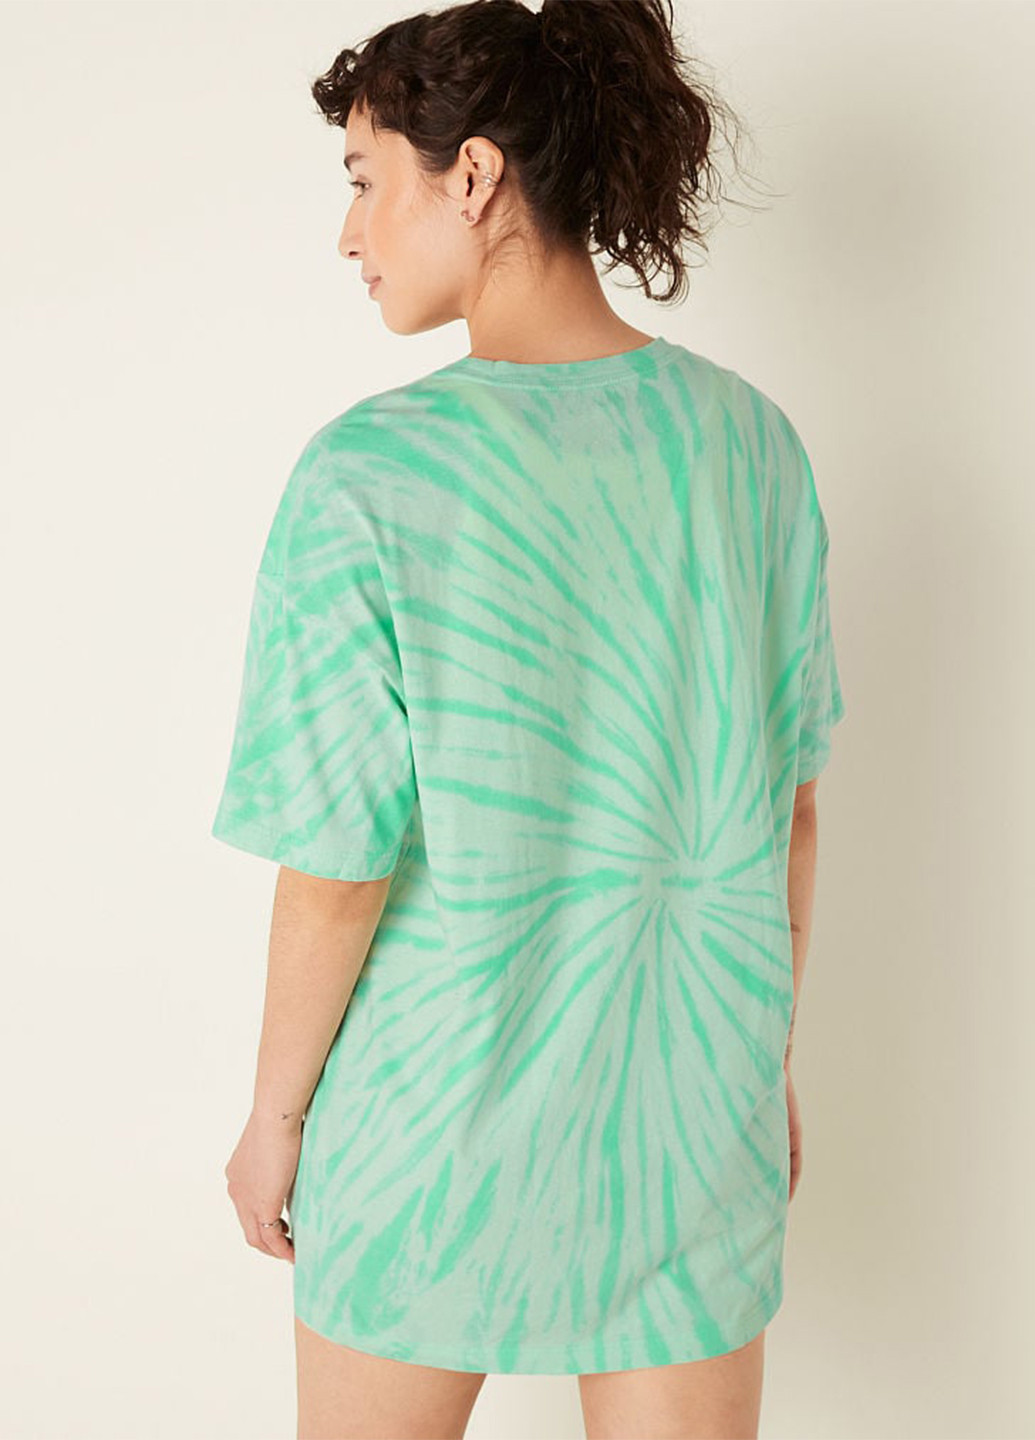 Зеленое домашнее платье платье-футболка Victoria's Secret с абстрактным узором